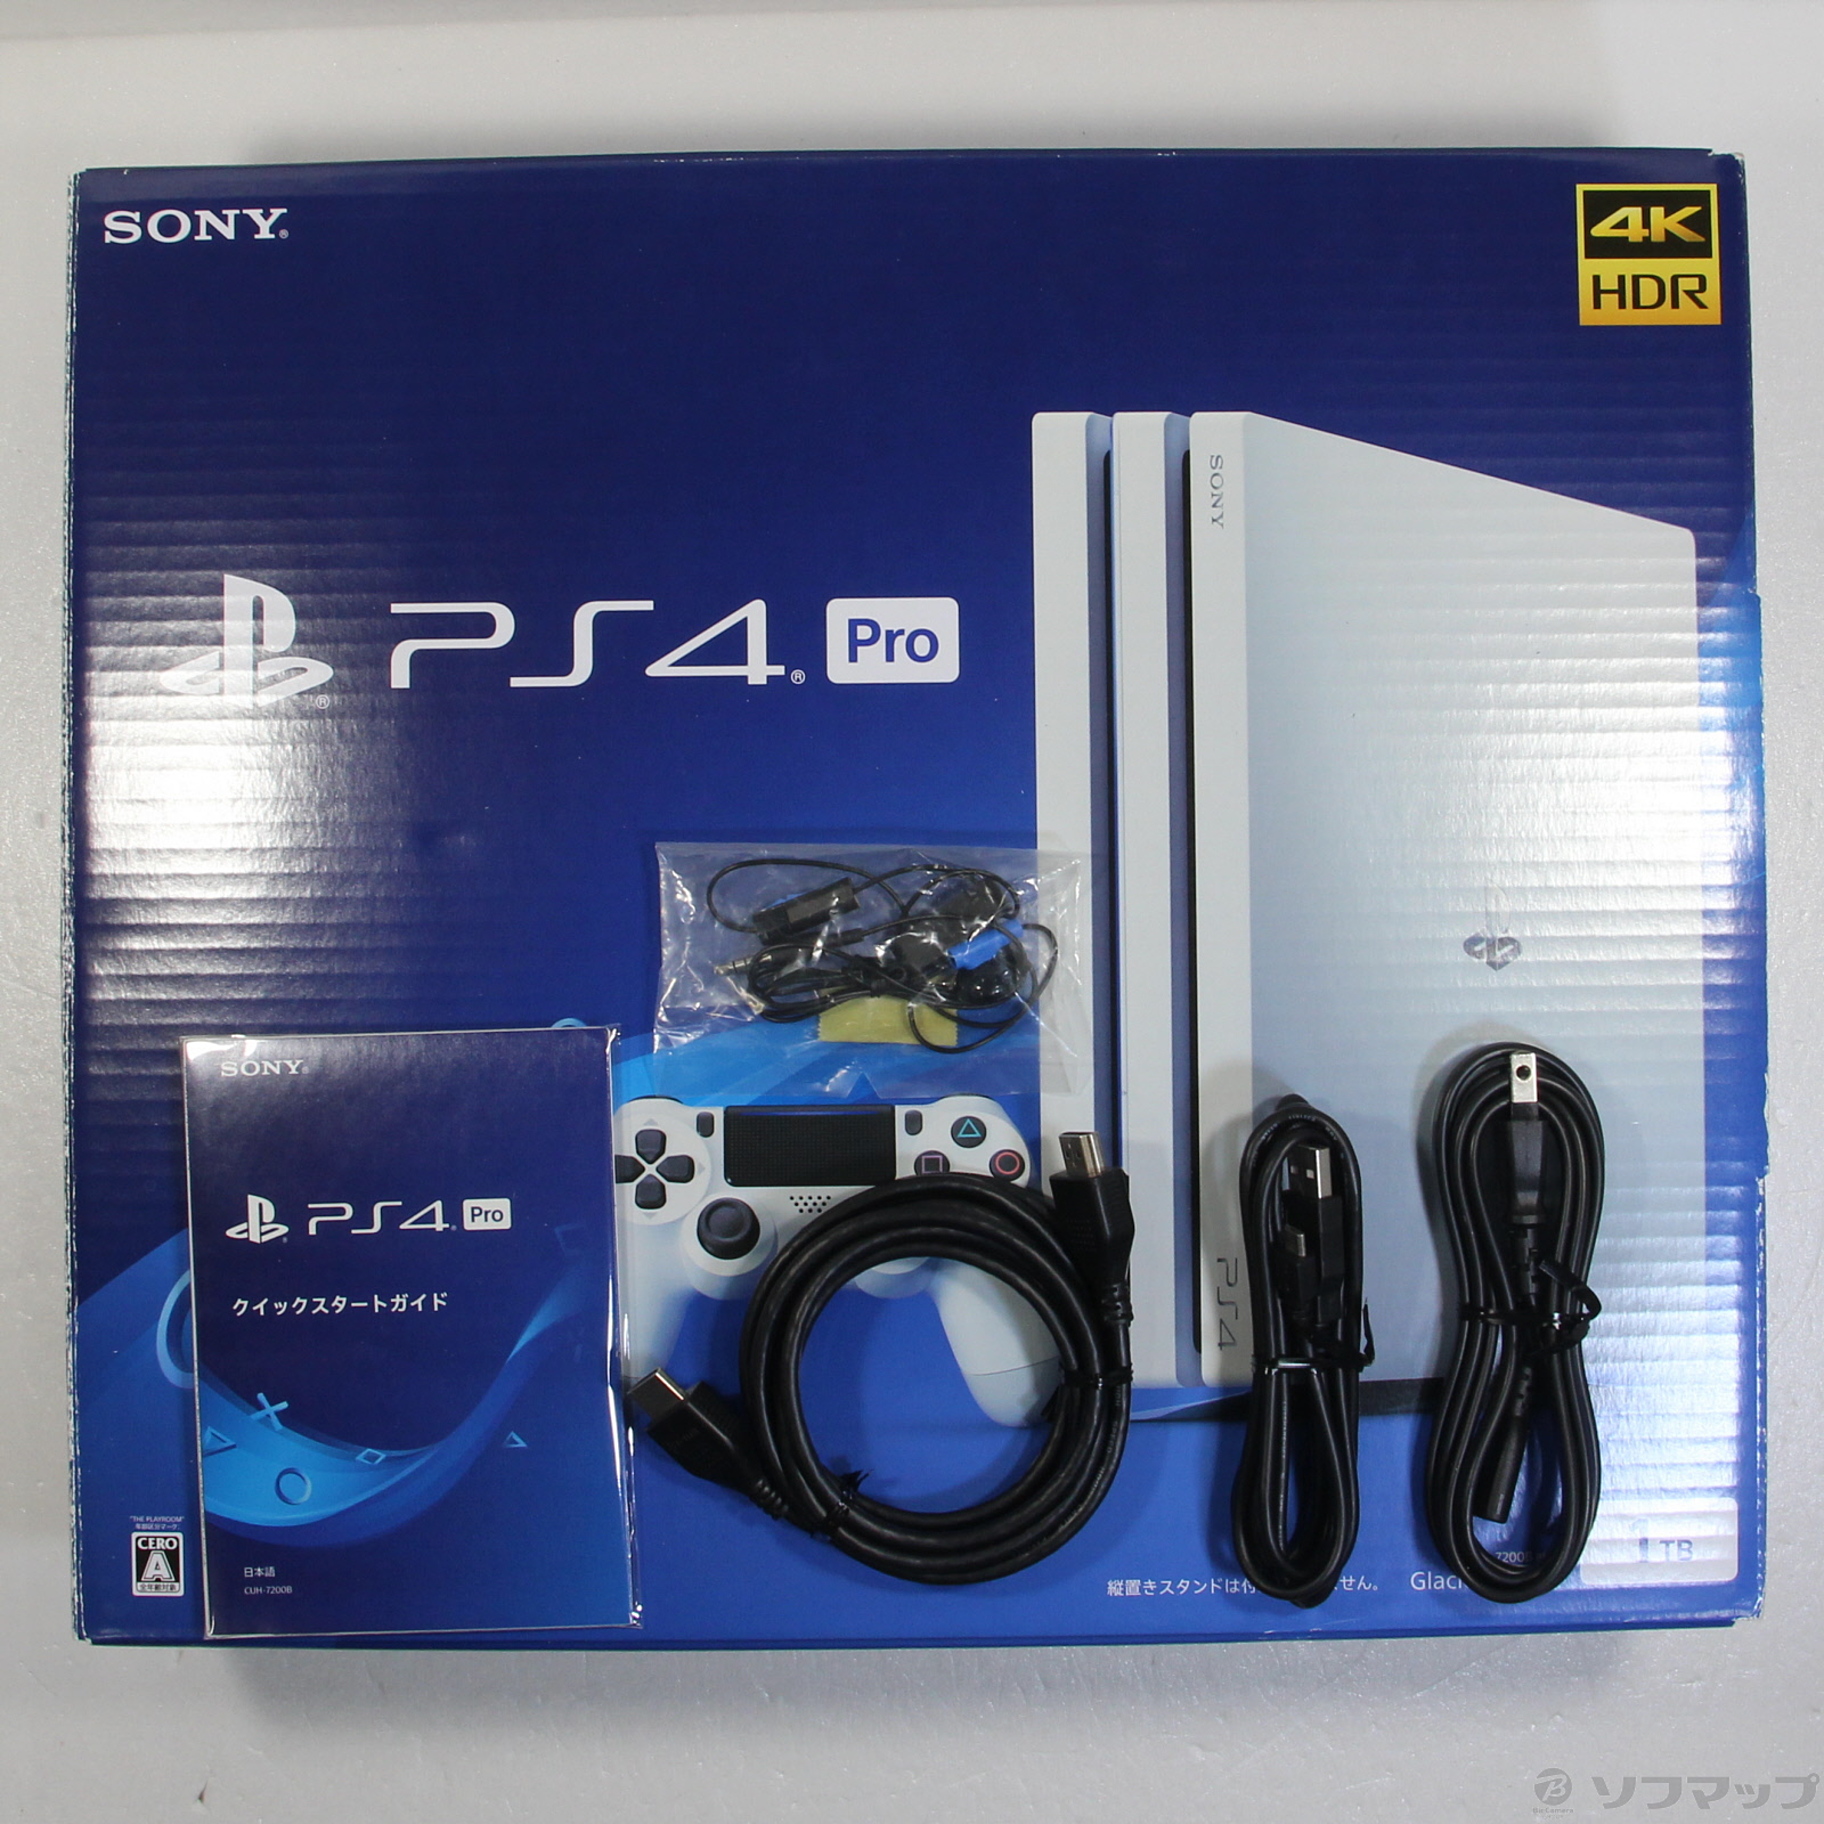 中古】PlayStation 4 Pro グレイシャー・ホワイト 1TB CUH-7200BB02